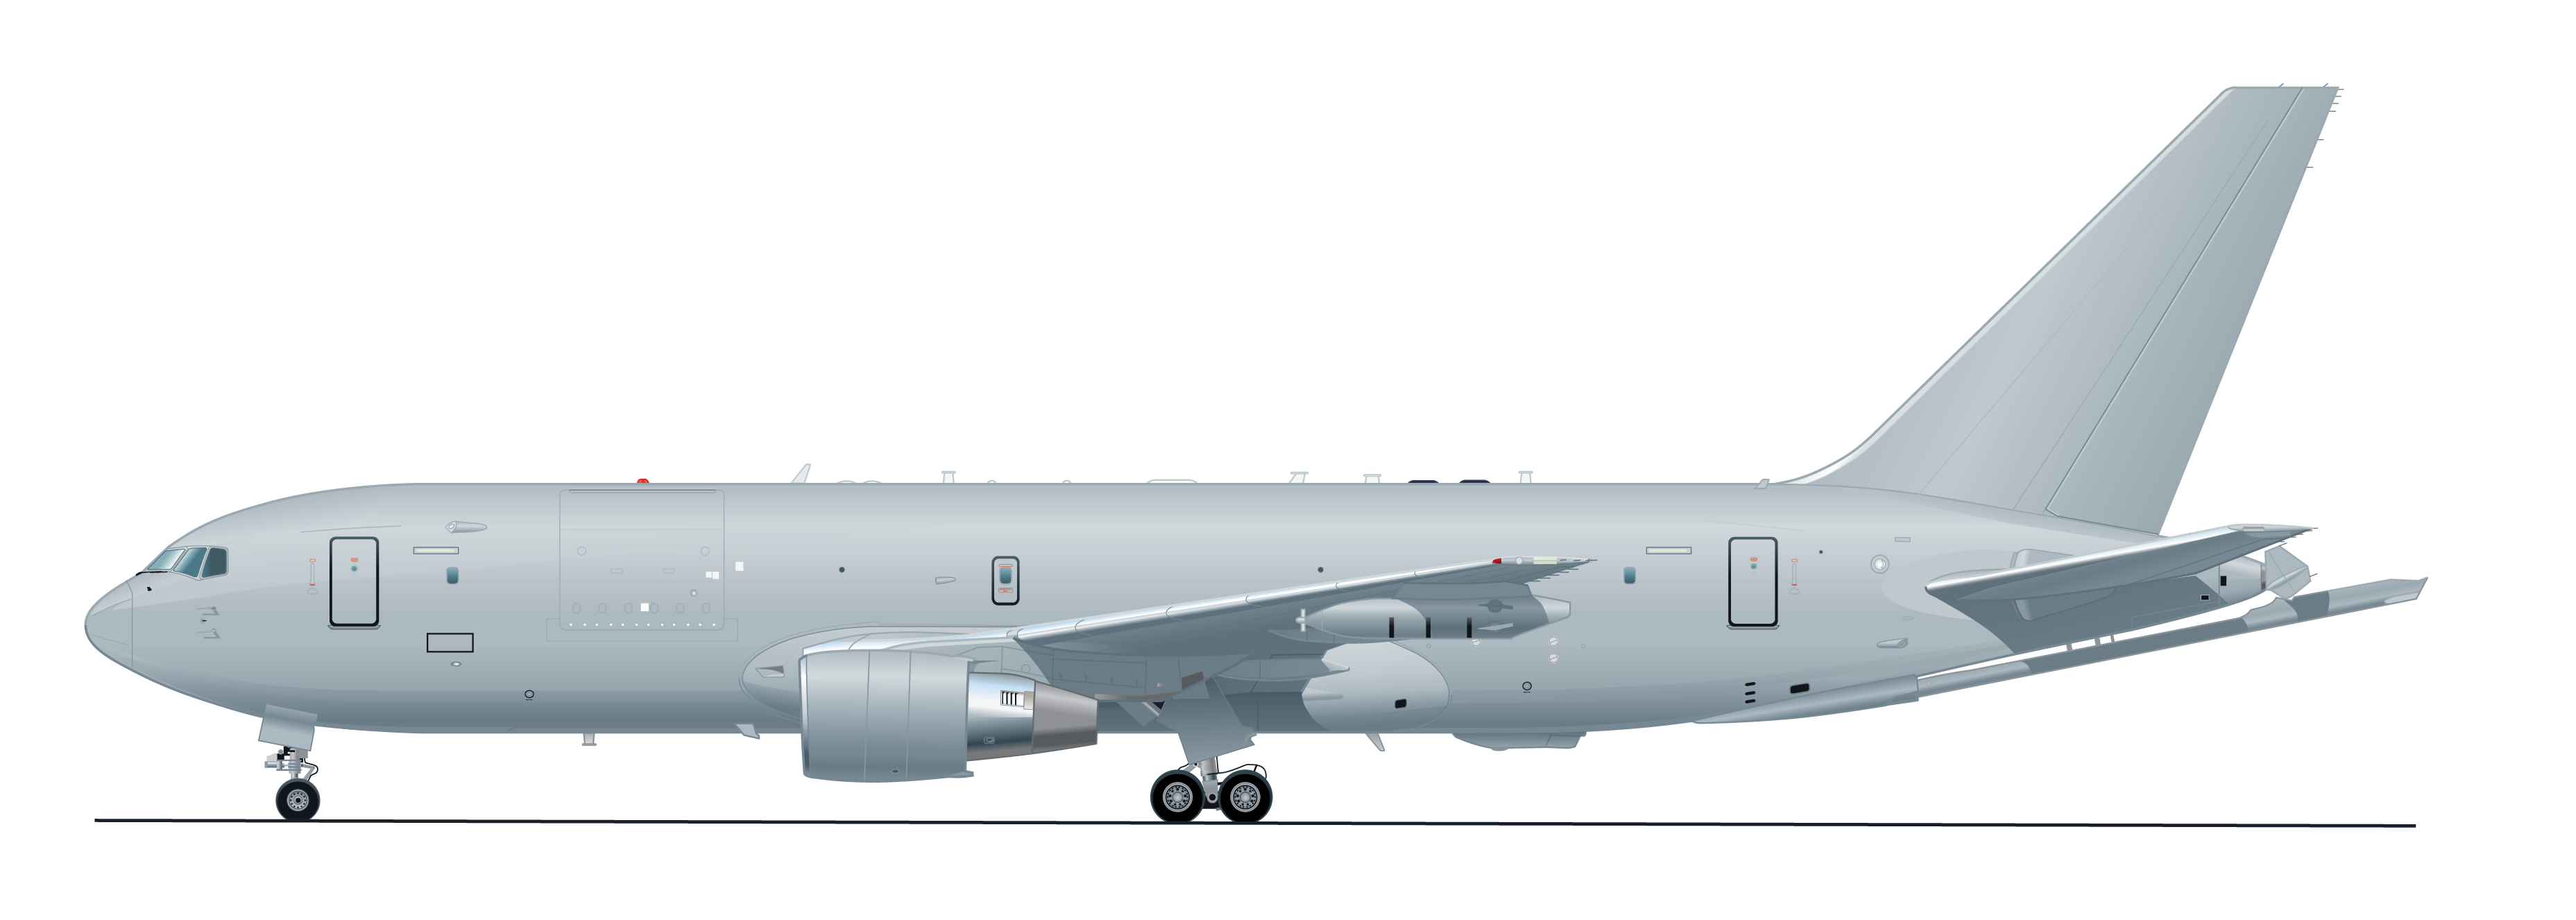 AAR B767-KC46